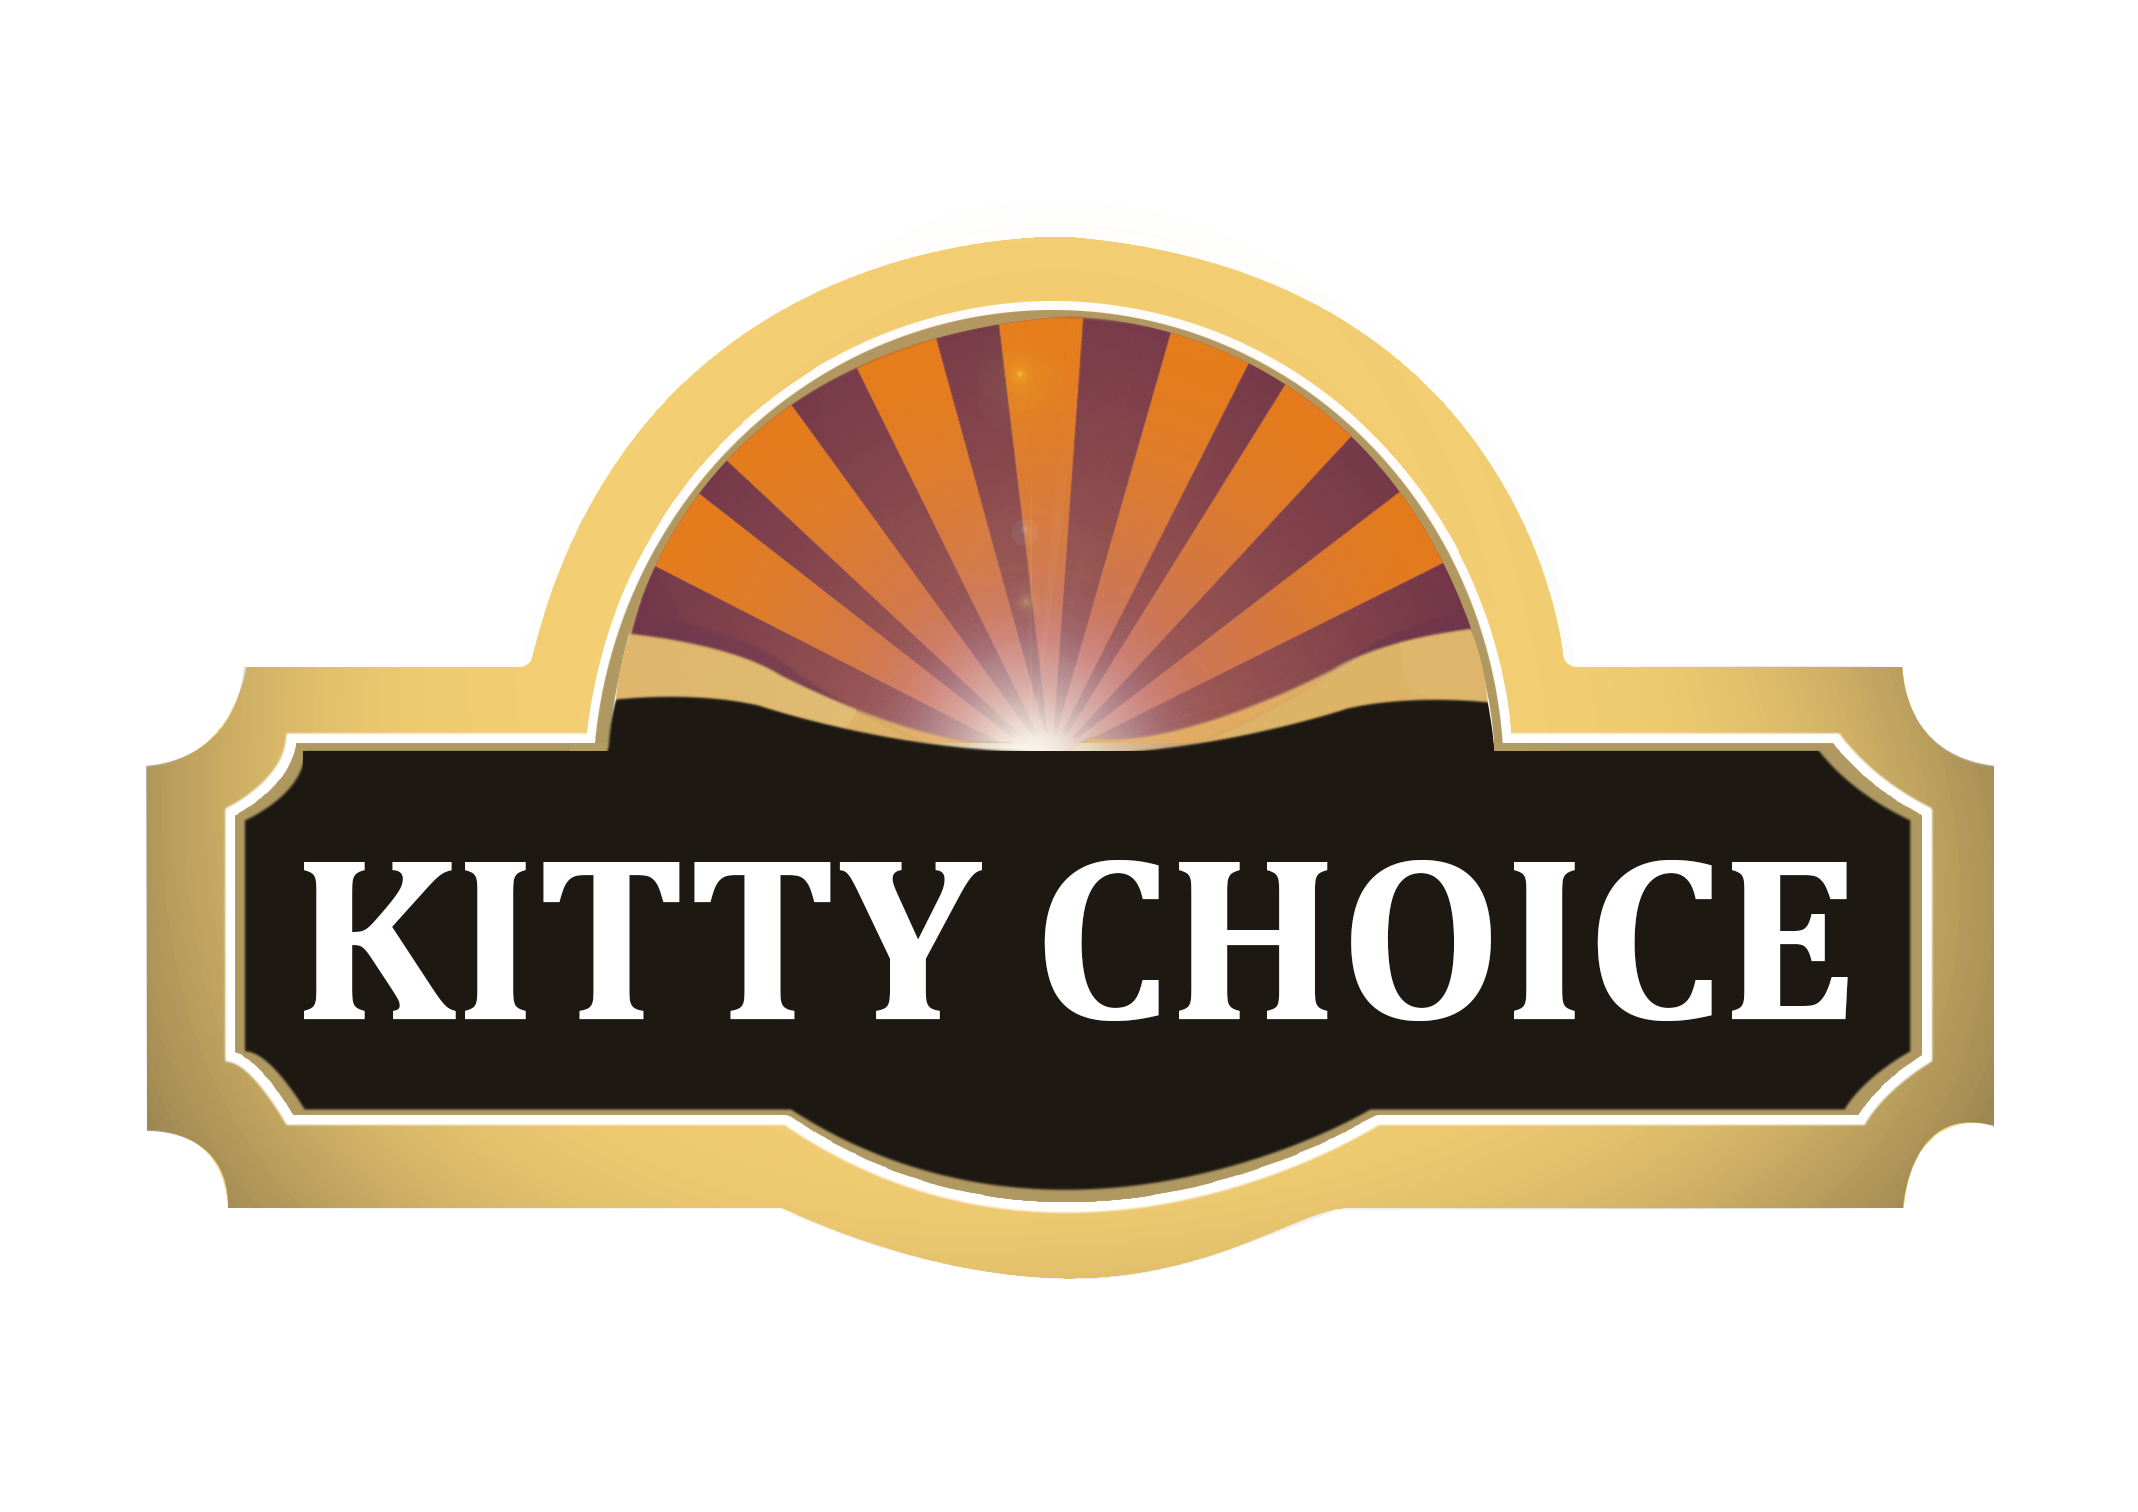 Kitty Choice